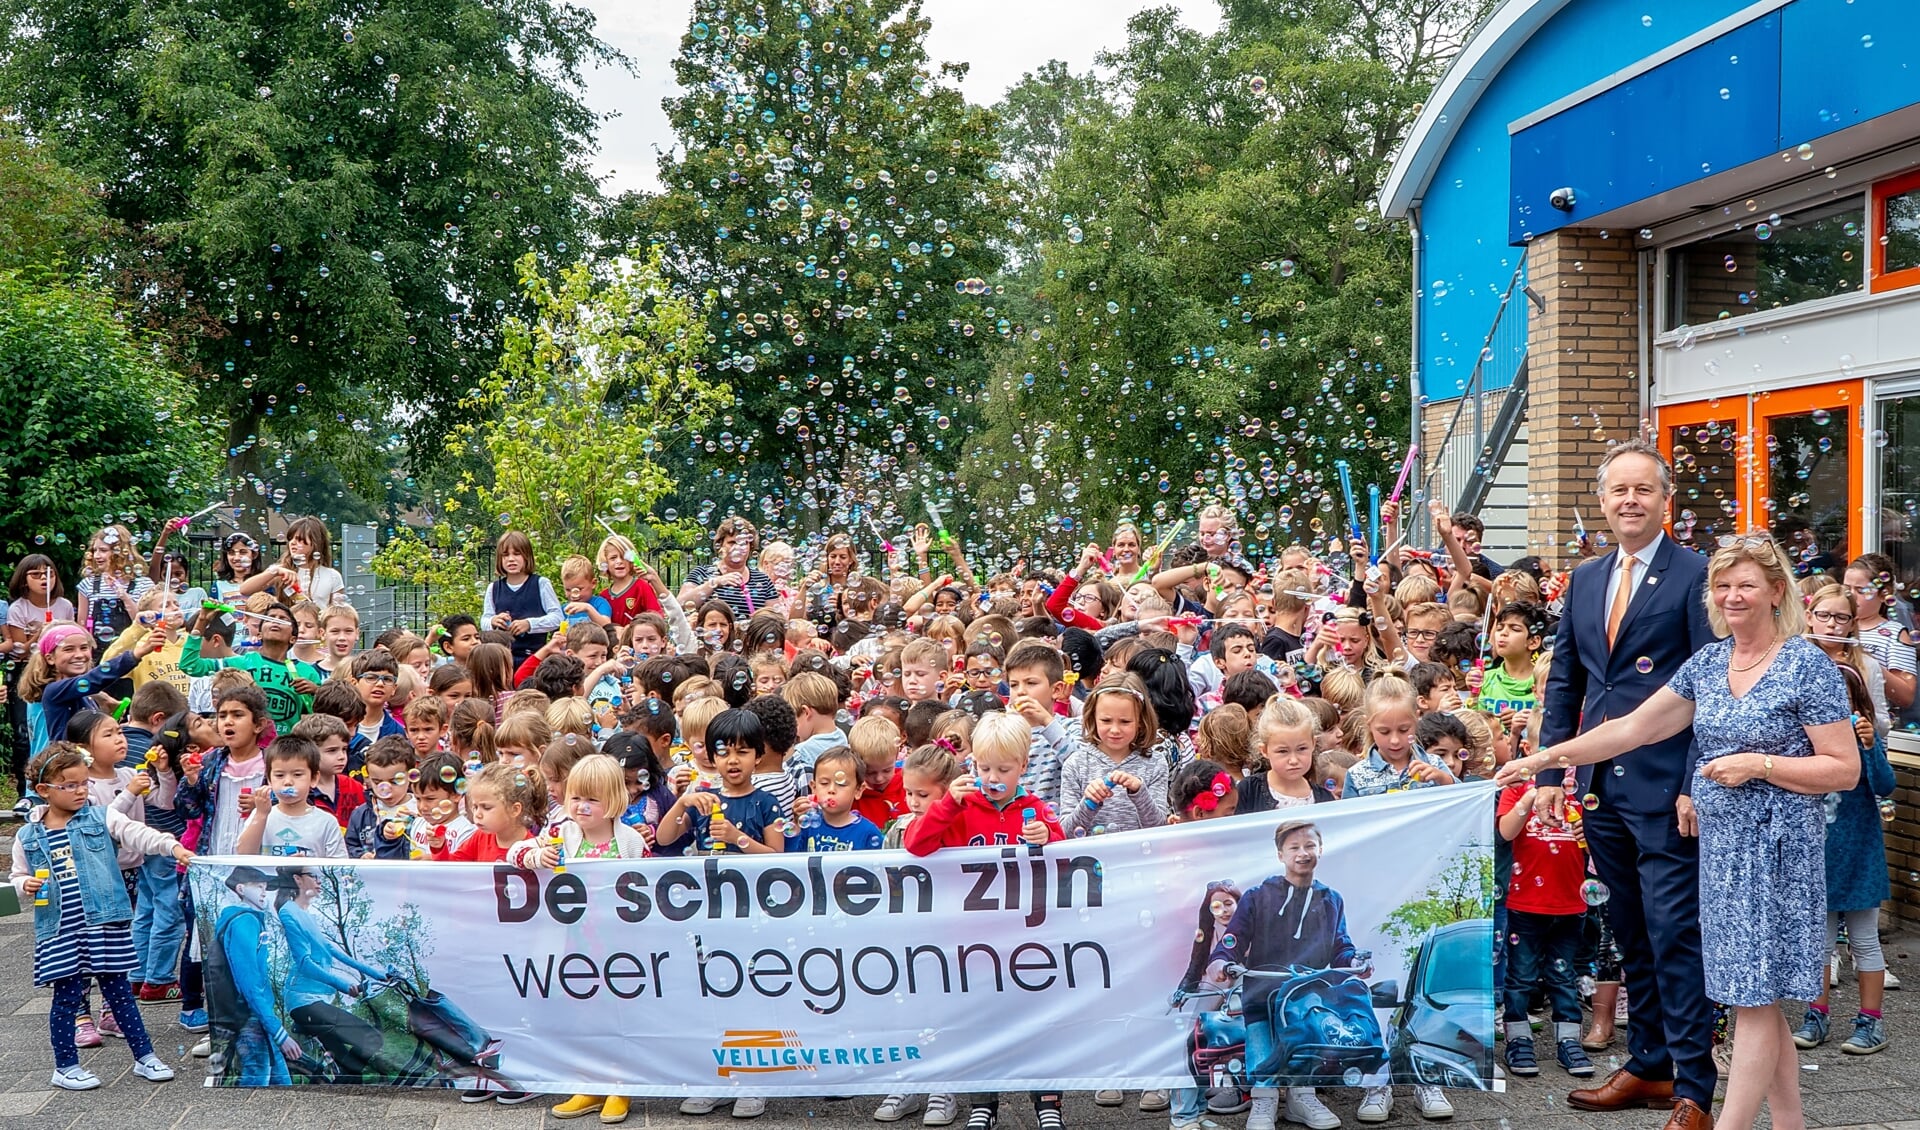 Allemaal bellen blazen om aandacht te vragen voor de campagne 'De scholen zijn weer begonnen'. Rechts naast het spandoek staat wethouder Willem Joosten. 